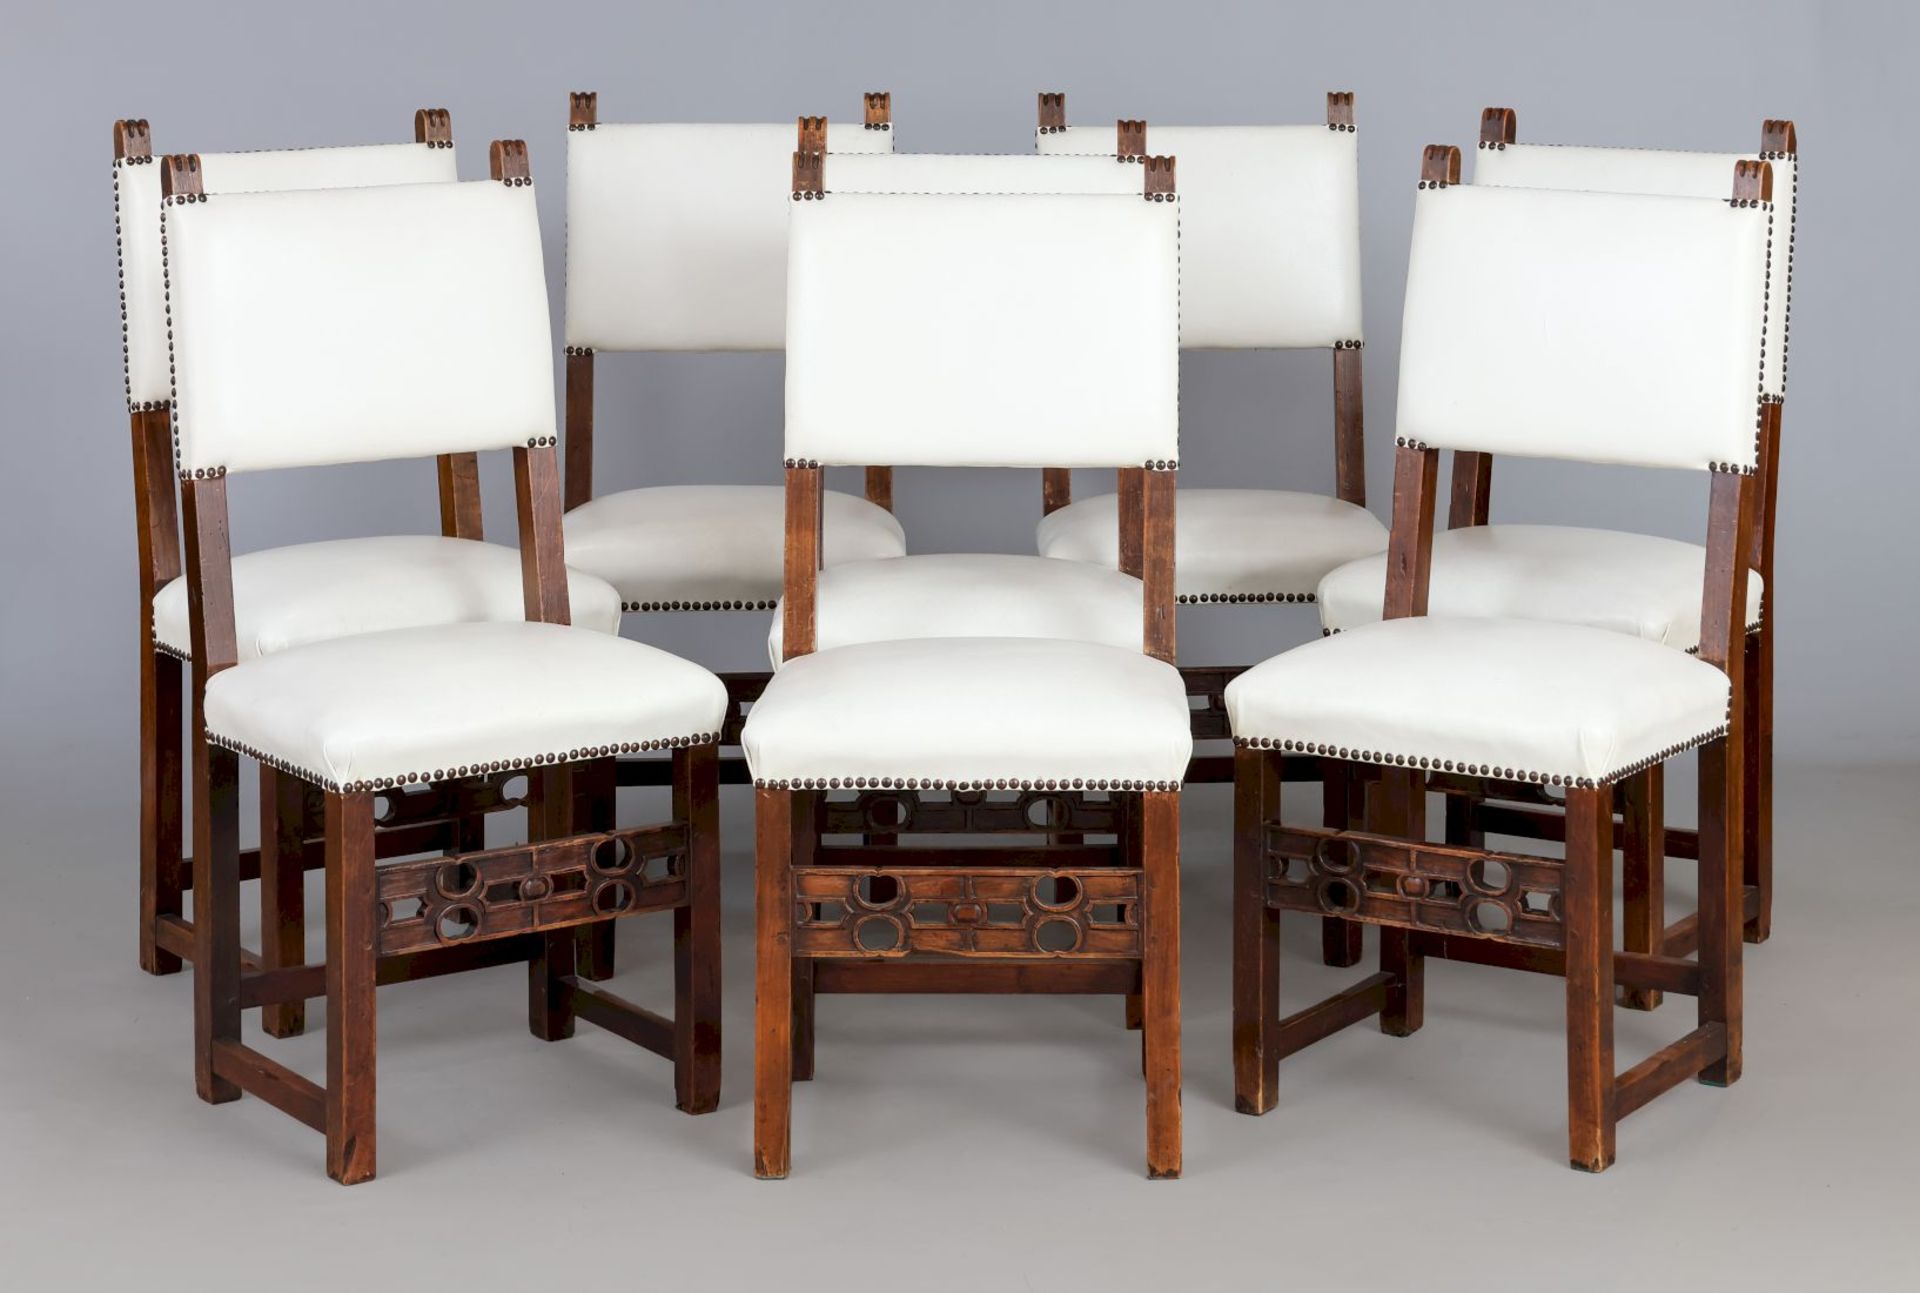 8 Stühle im Stile der iberischen Renaissance